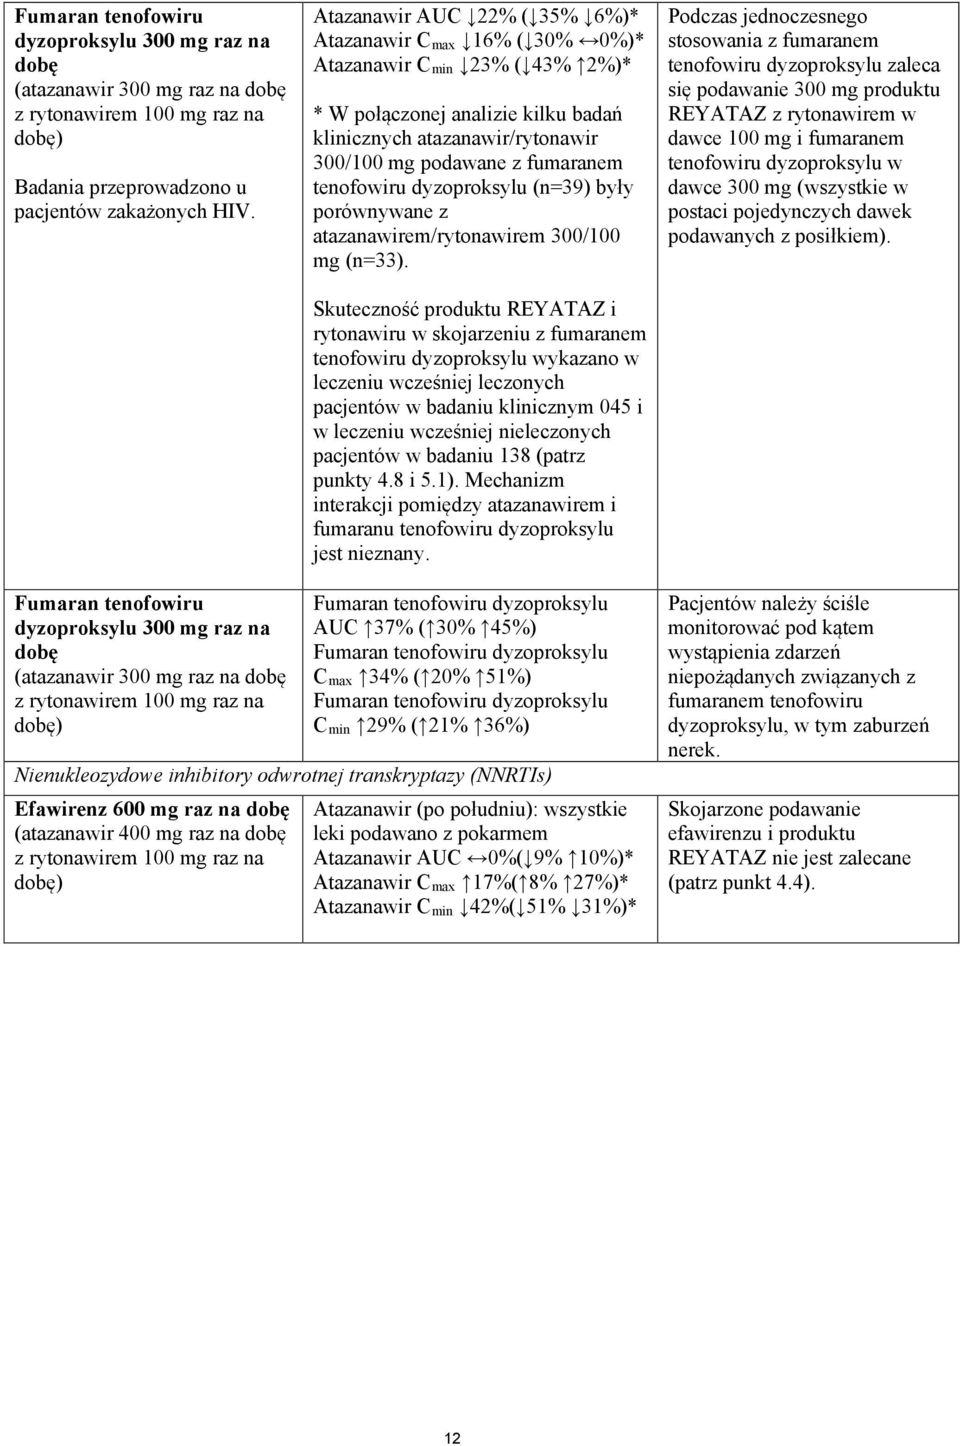 tenofowiru dyzoproksylu (n=39) były porównywane z atazanawirem/rytonawirem 300/100 mg (n=33).